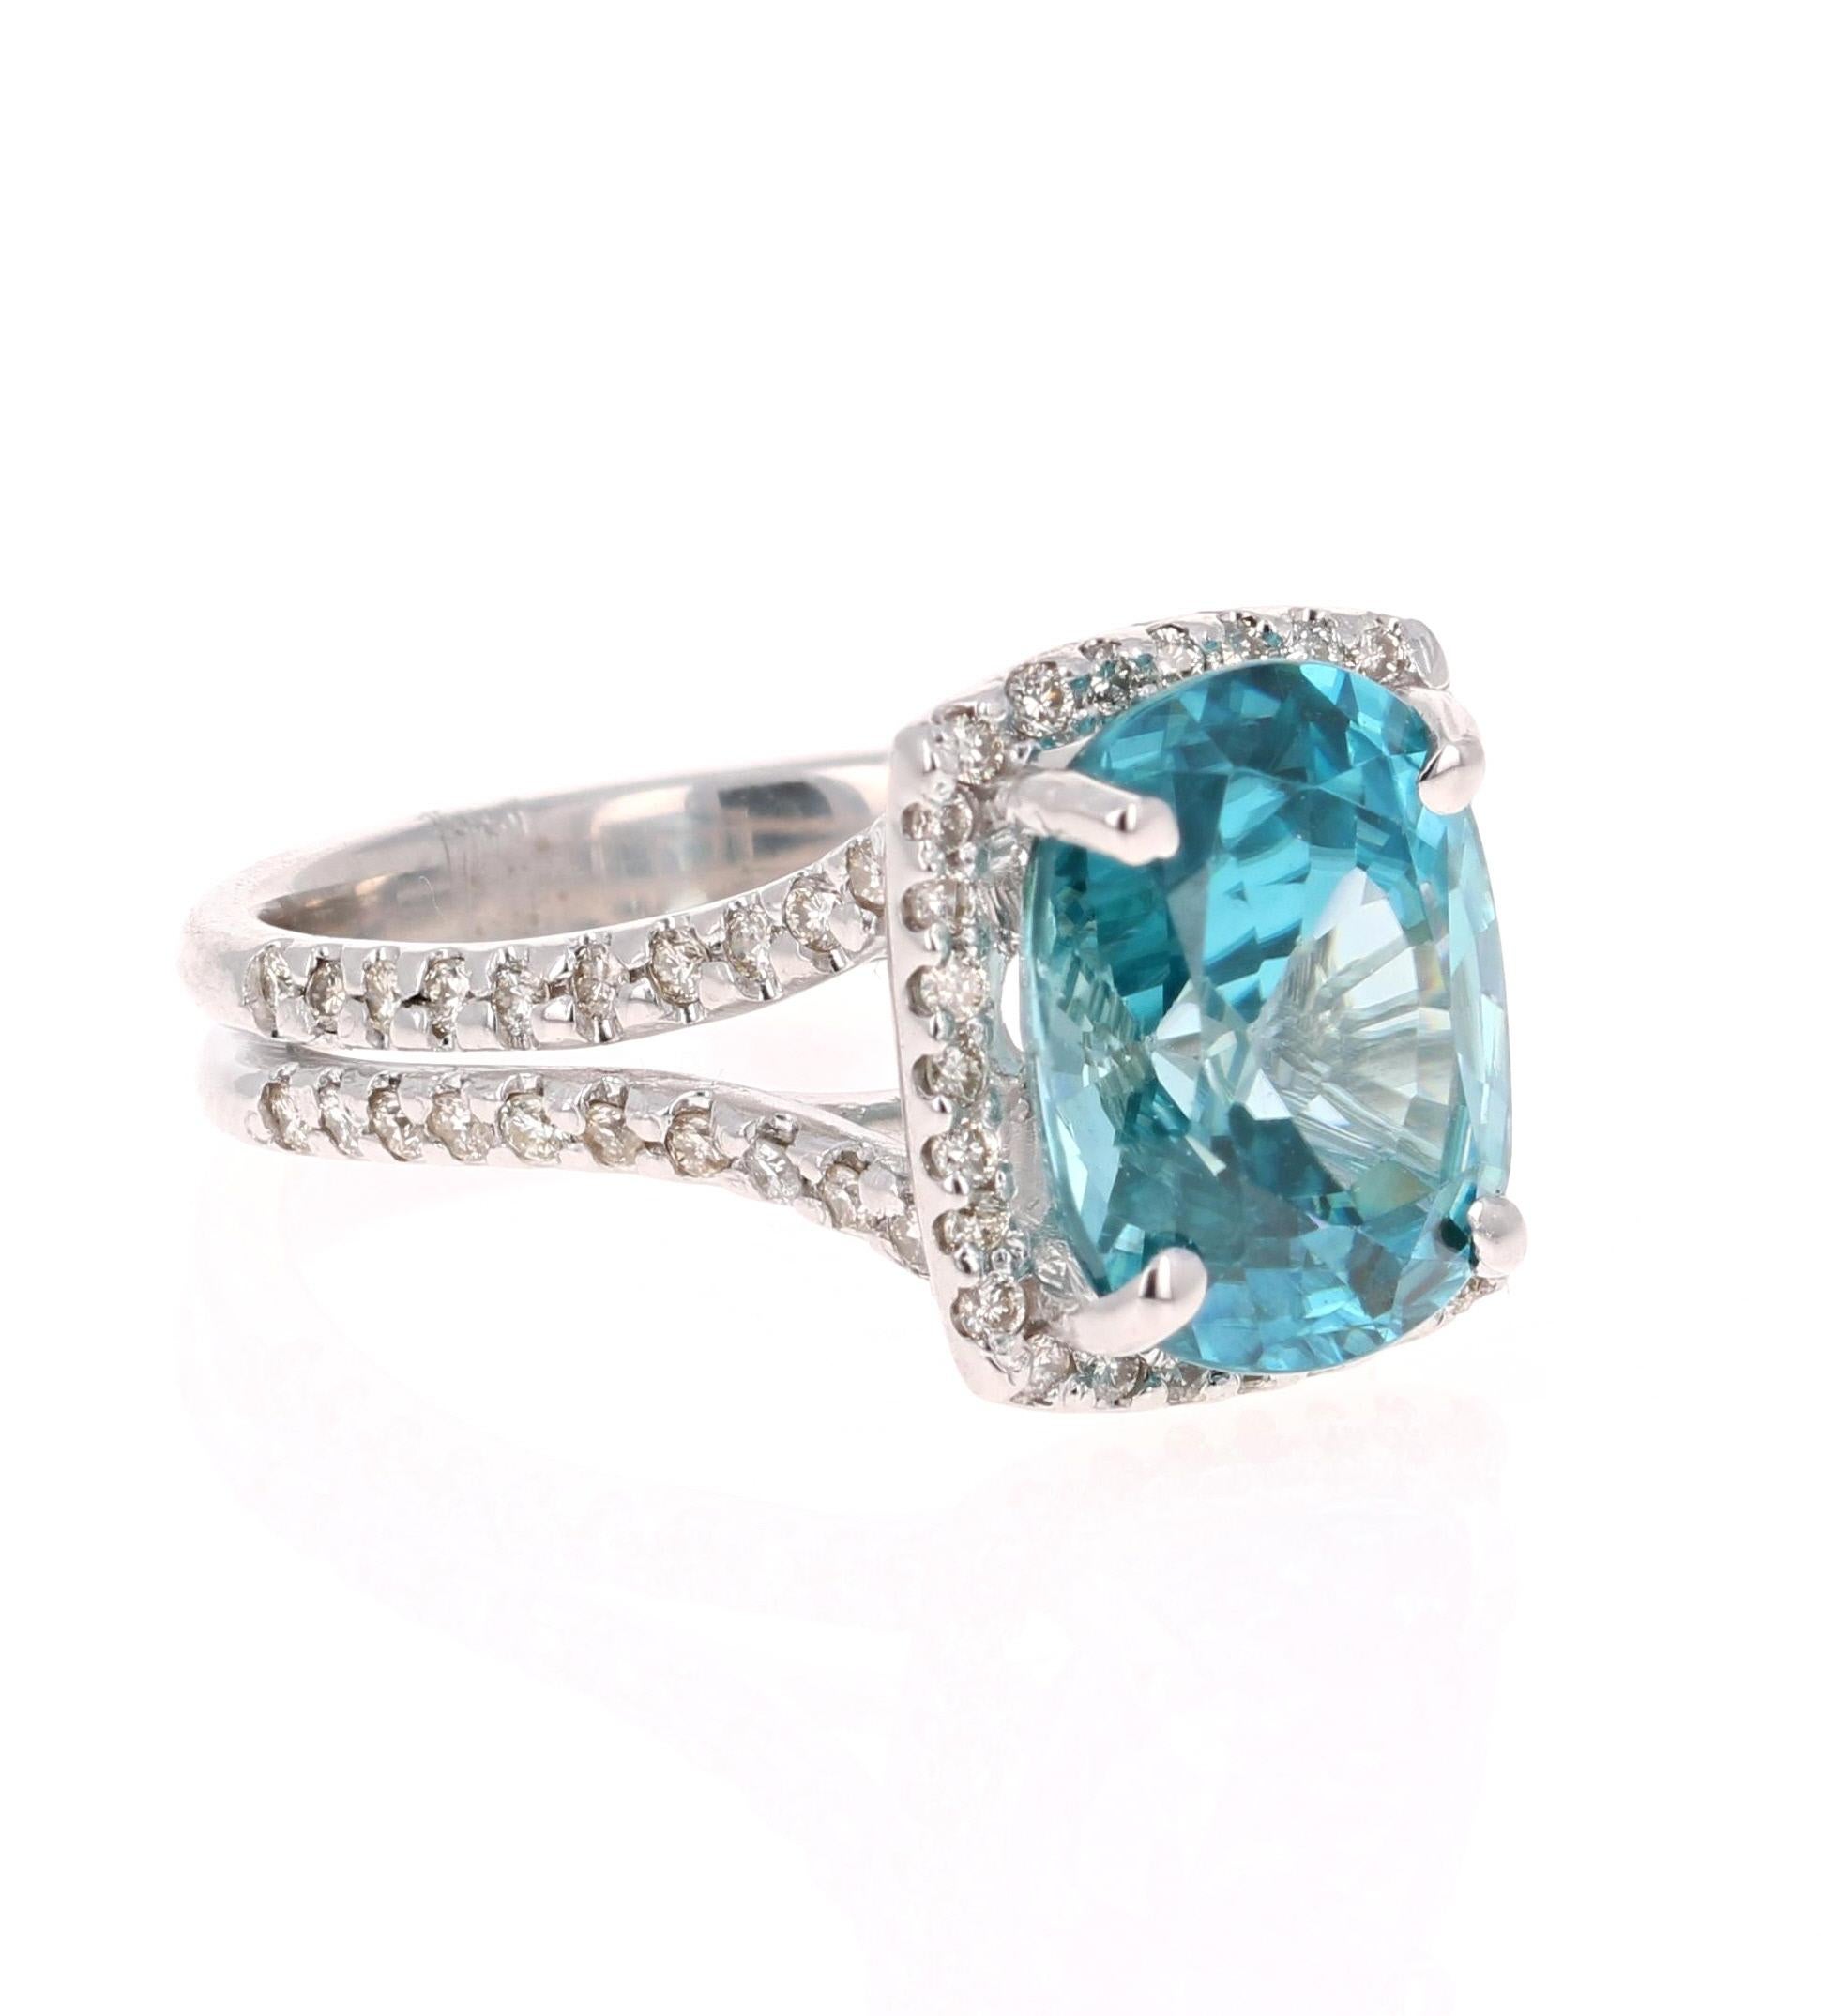 Ein schillernder Ring aus blauem Zirkon und Diamant! Blauer Zirkon ist ein Naturstein, der in verschiedenen Teilen der Welt abgebaut wird, vor allem in Sri Lanka, Myanmar und Australien. 

Dieser blaue Zirkon im Ovalschliff hat 6,83 Karat und ist